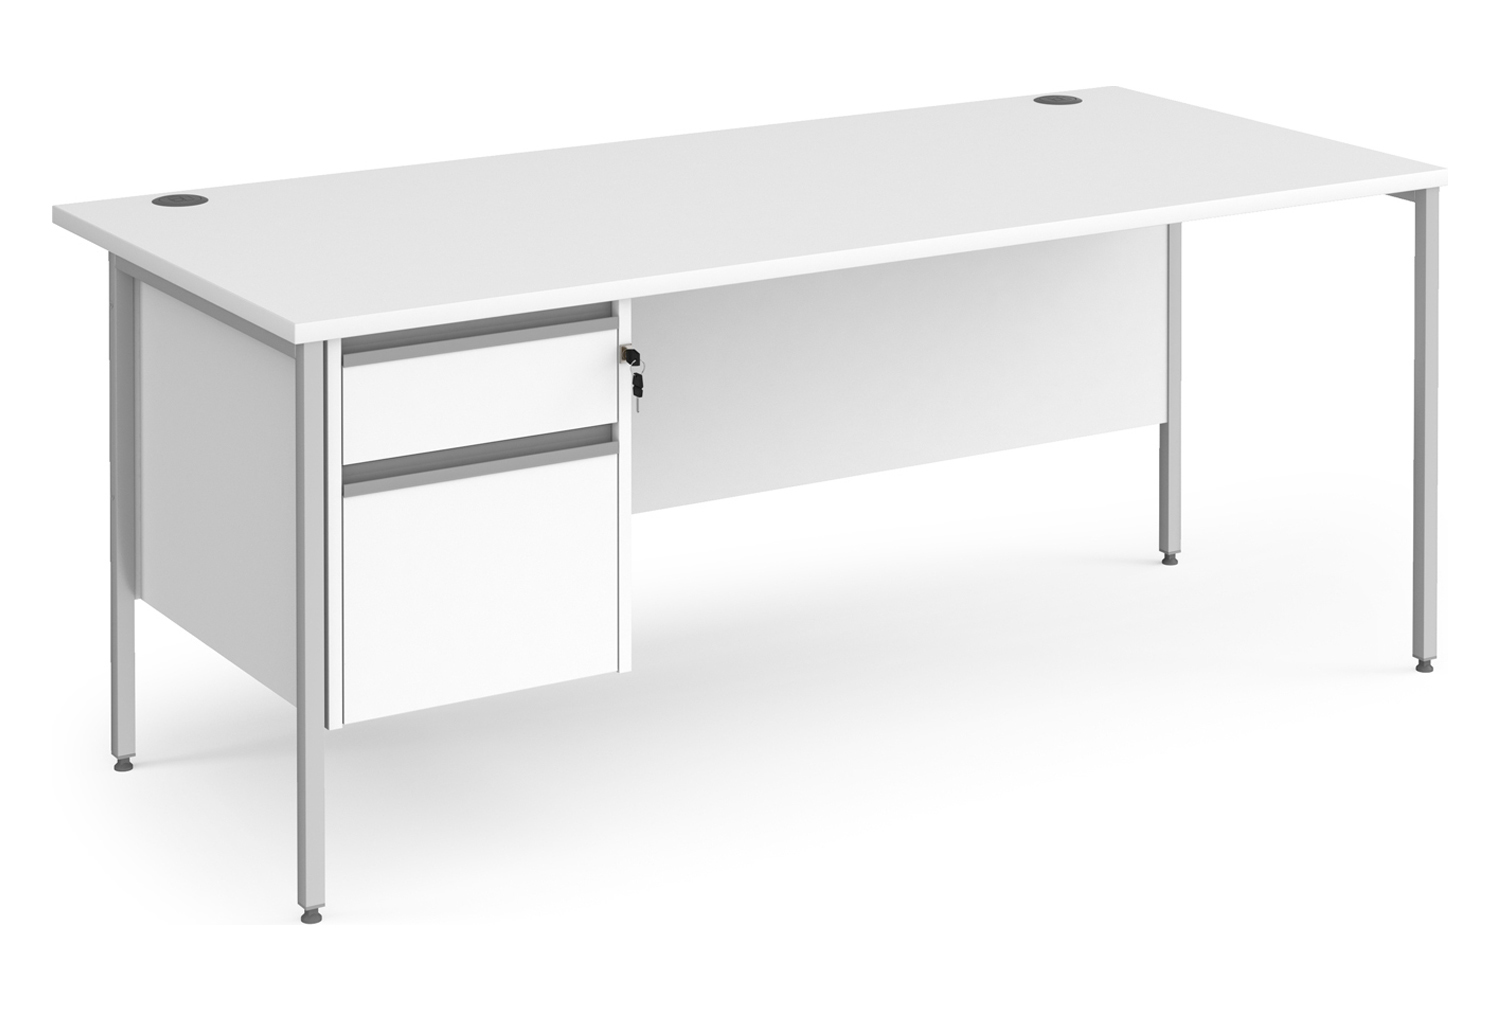 Value Line Classic+ Rectangular H-Leg Office Desk 2 Drawers (Silver Leg), 180wx80dx73h (cm), White, Fully Installed